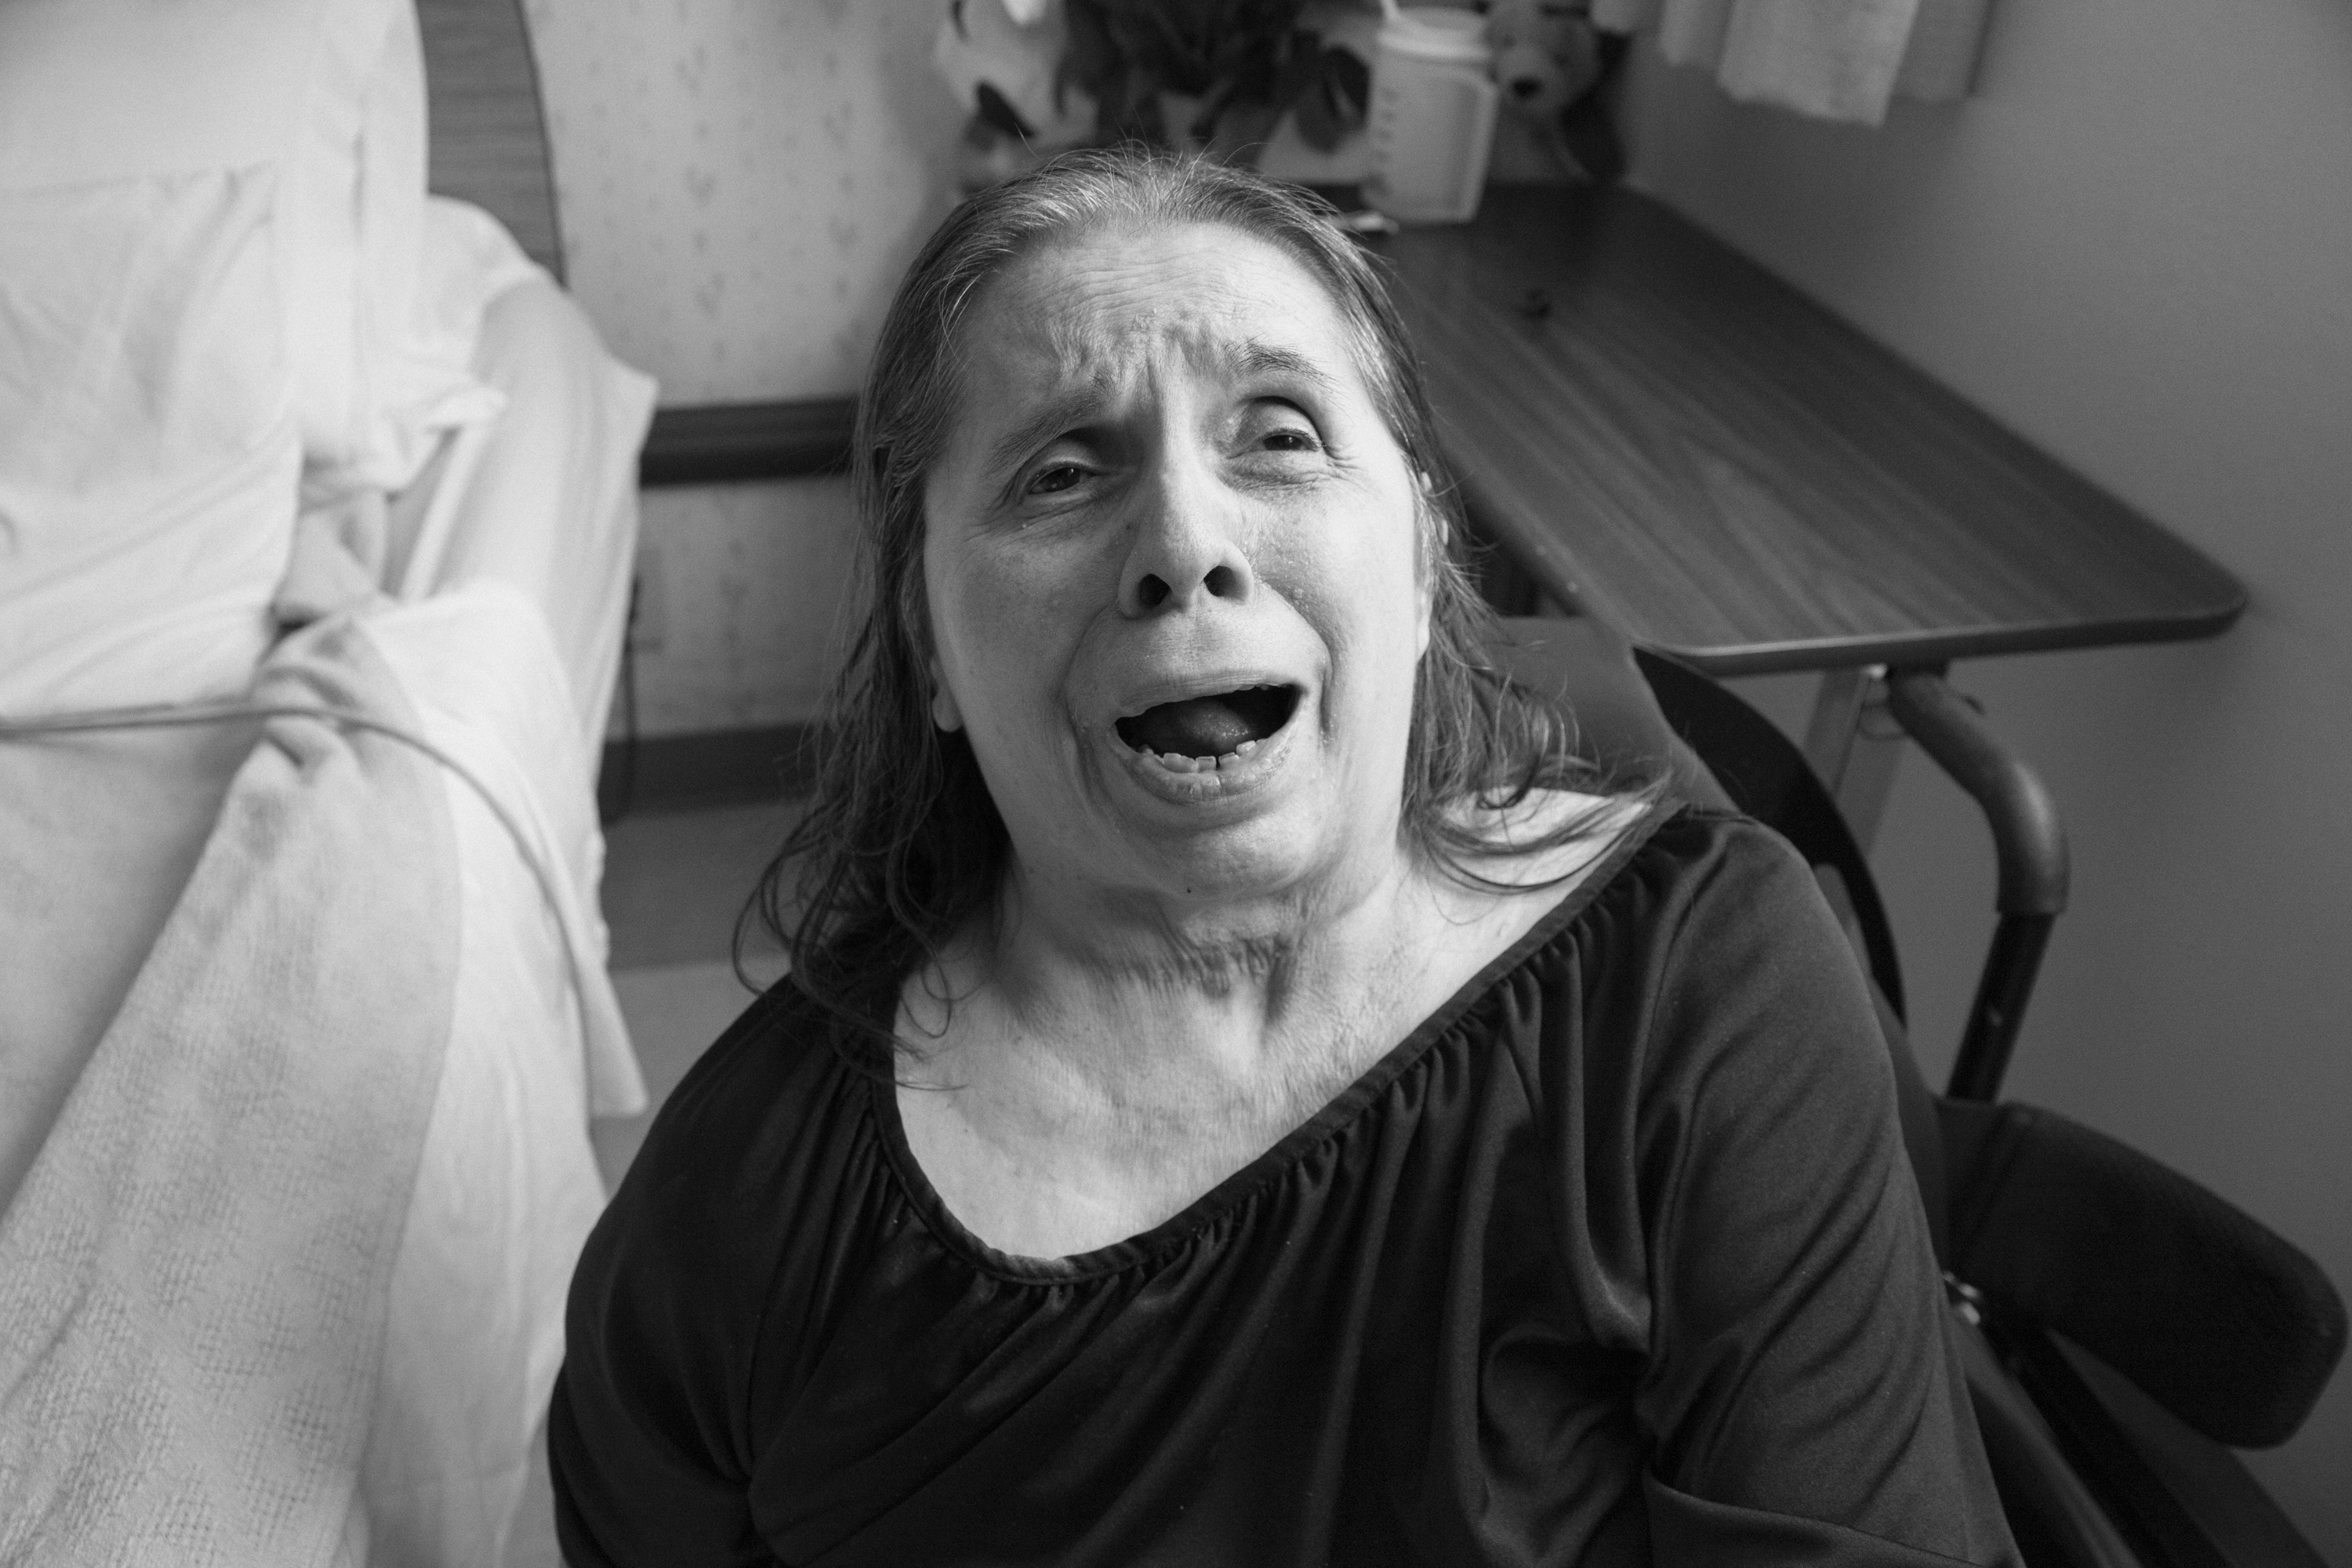 Rachel ha pasado 40 de sus 82 años internada debido a la discapacidad que le produjo la violencia doméstica. (Hannah Kozak / He Threw The Last Punch Too Hard / FotoEvidence)